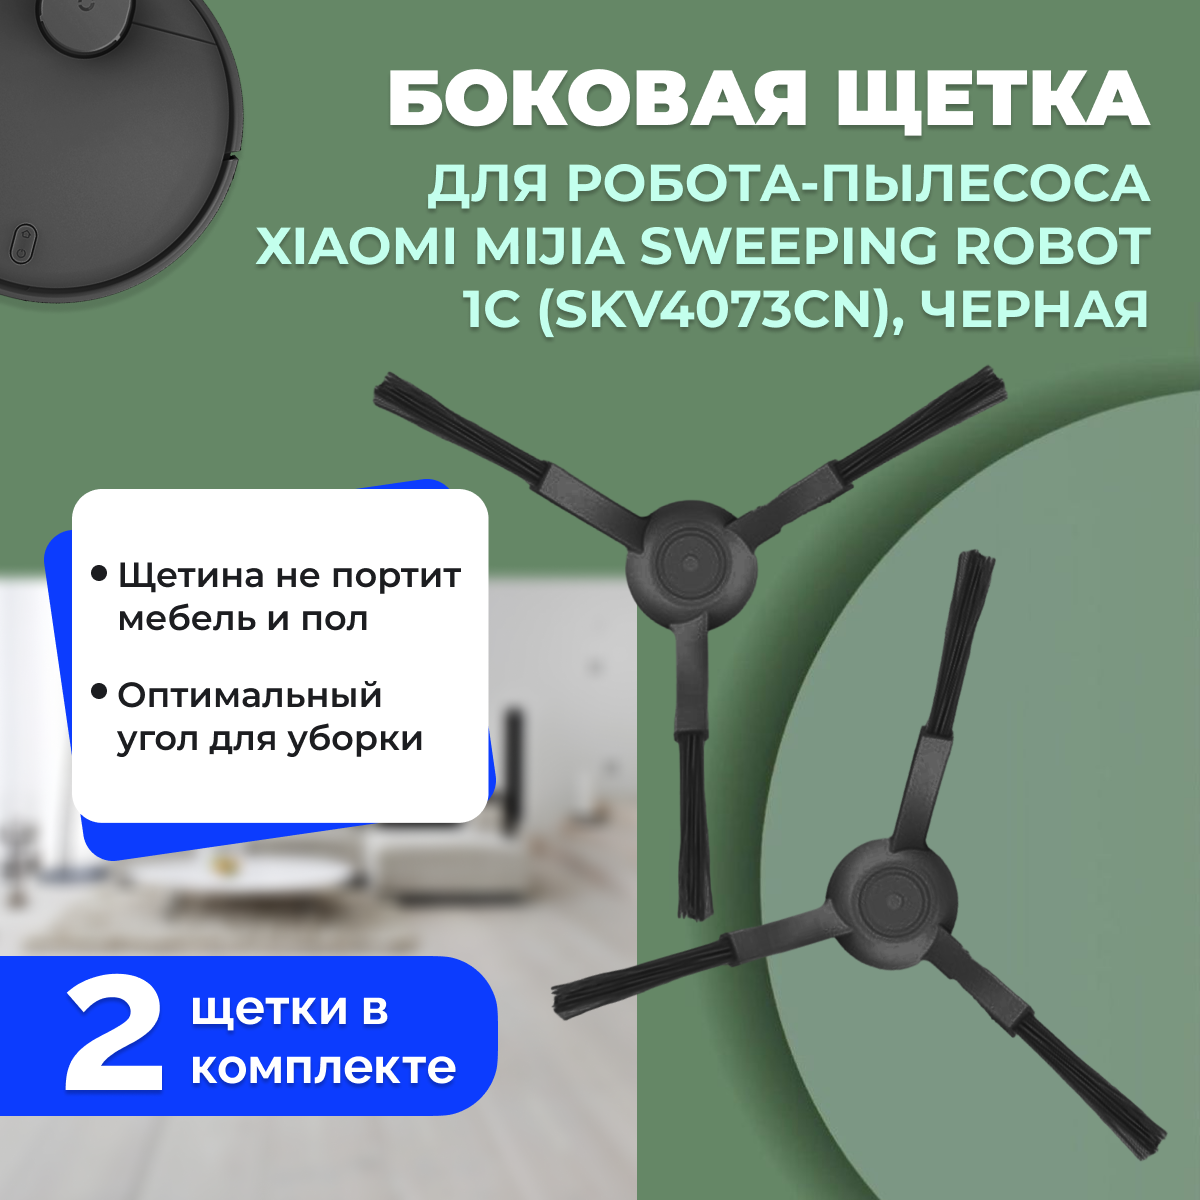 Боковые щетки для робота-пылесоса Xiaomi Mijia Sweeping Robot 1C (SKV4073CN), черные, 2 штуки 558607, фото 1